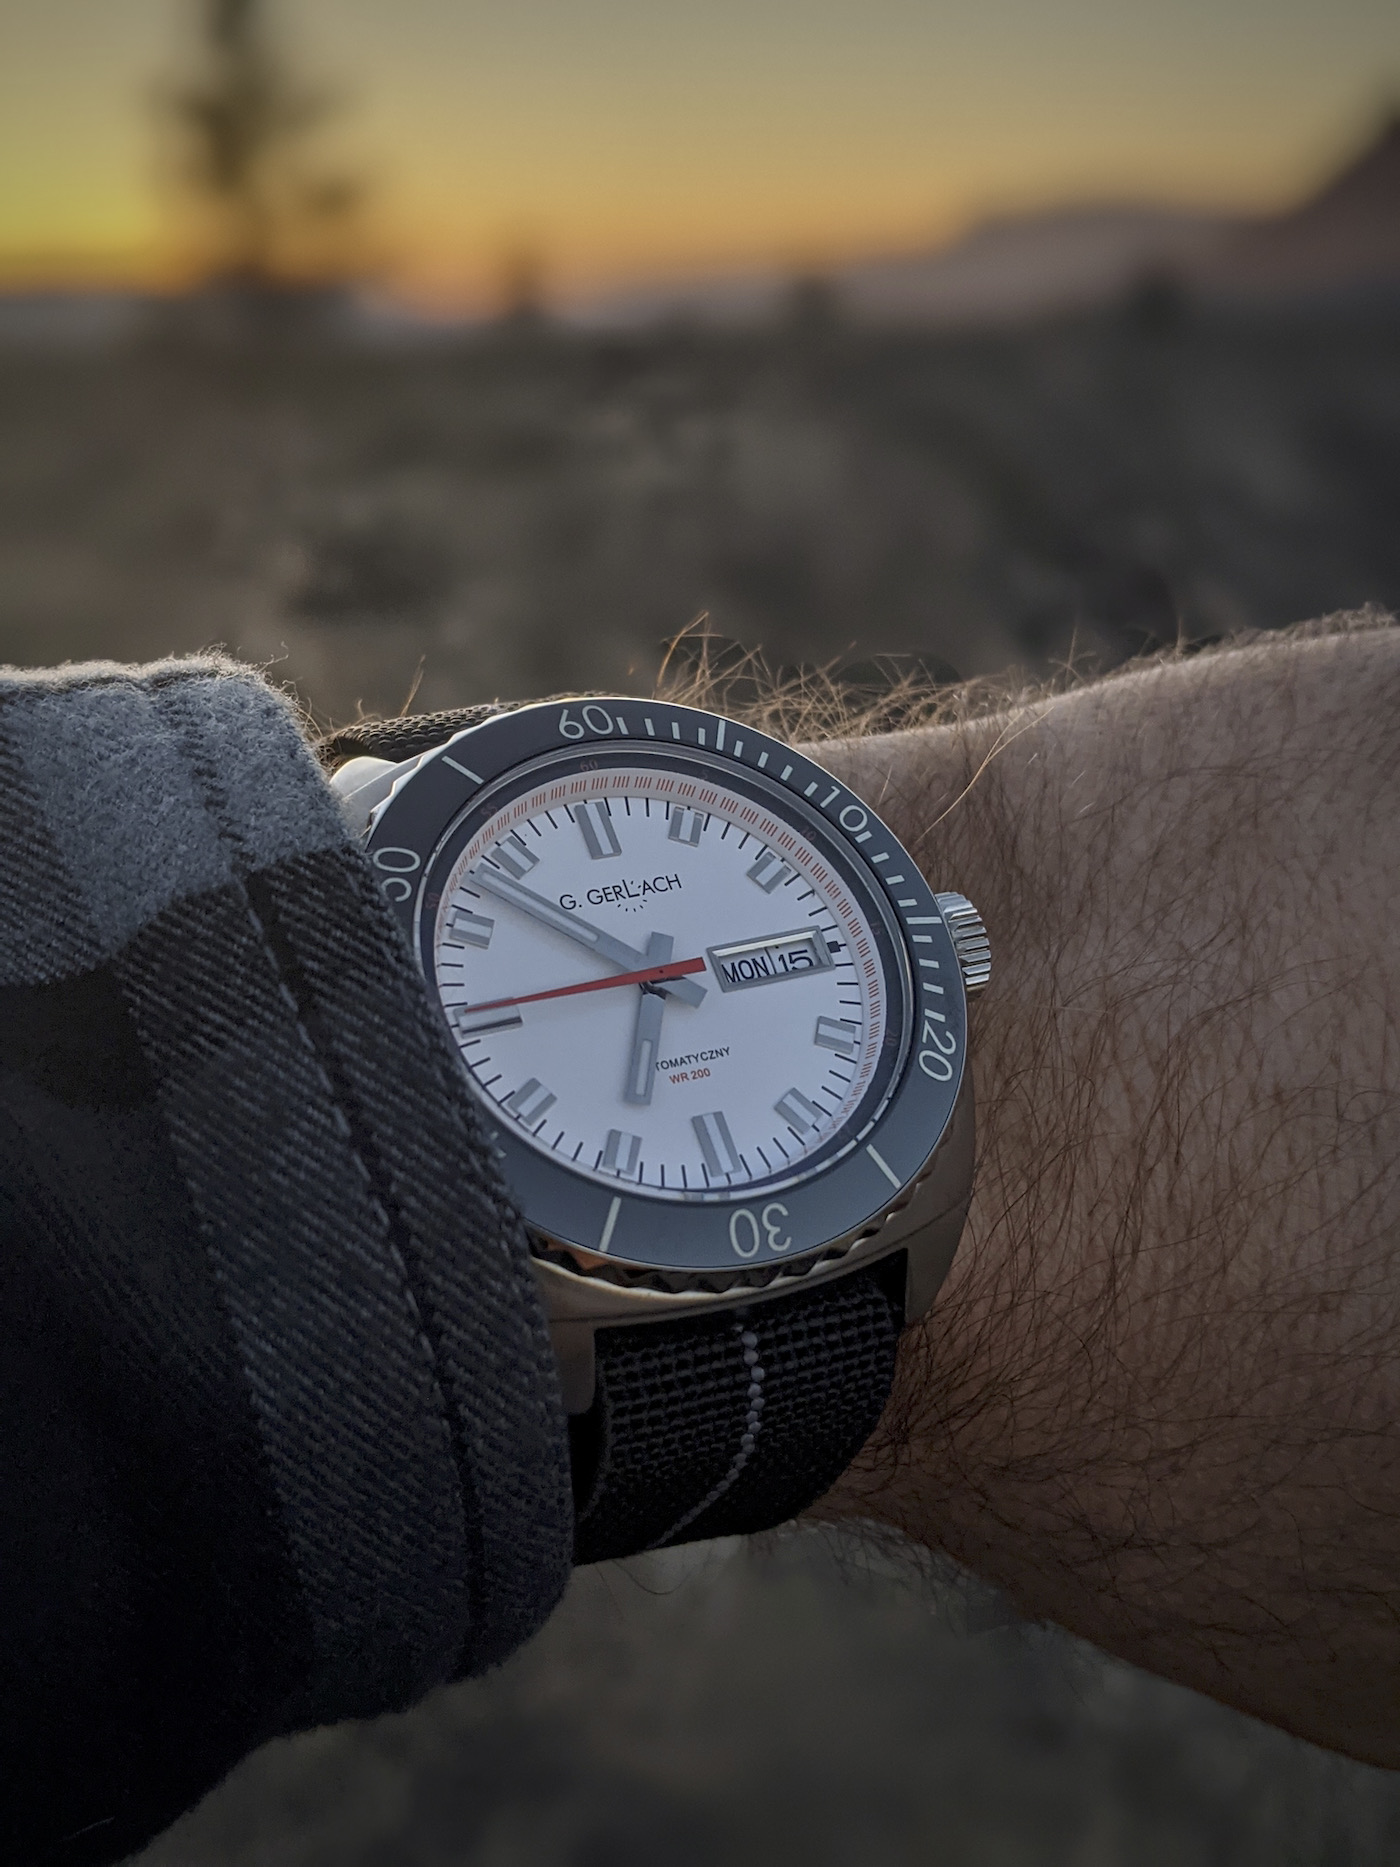 品鉴小型手表独立品牌珍品G. Gerlach推出的Enigma II手表